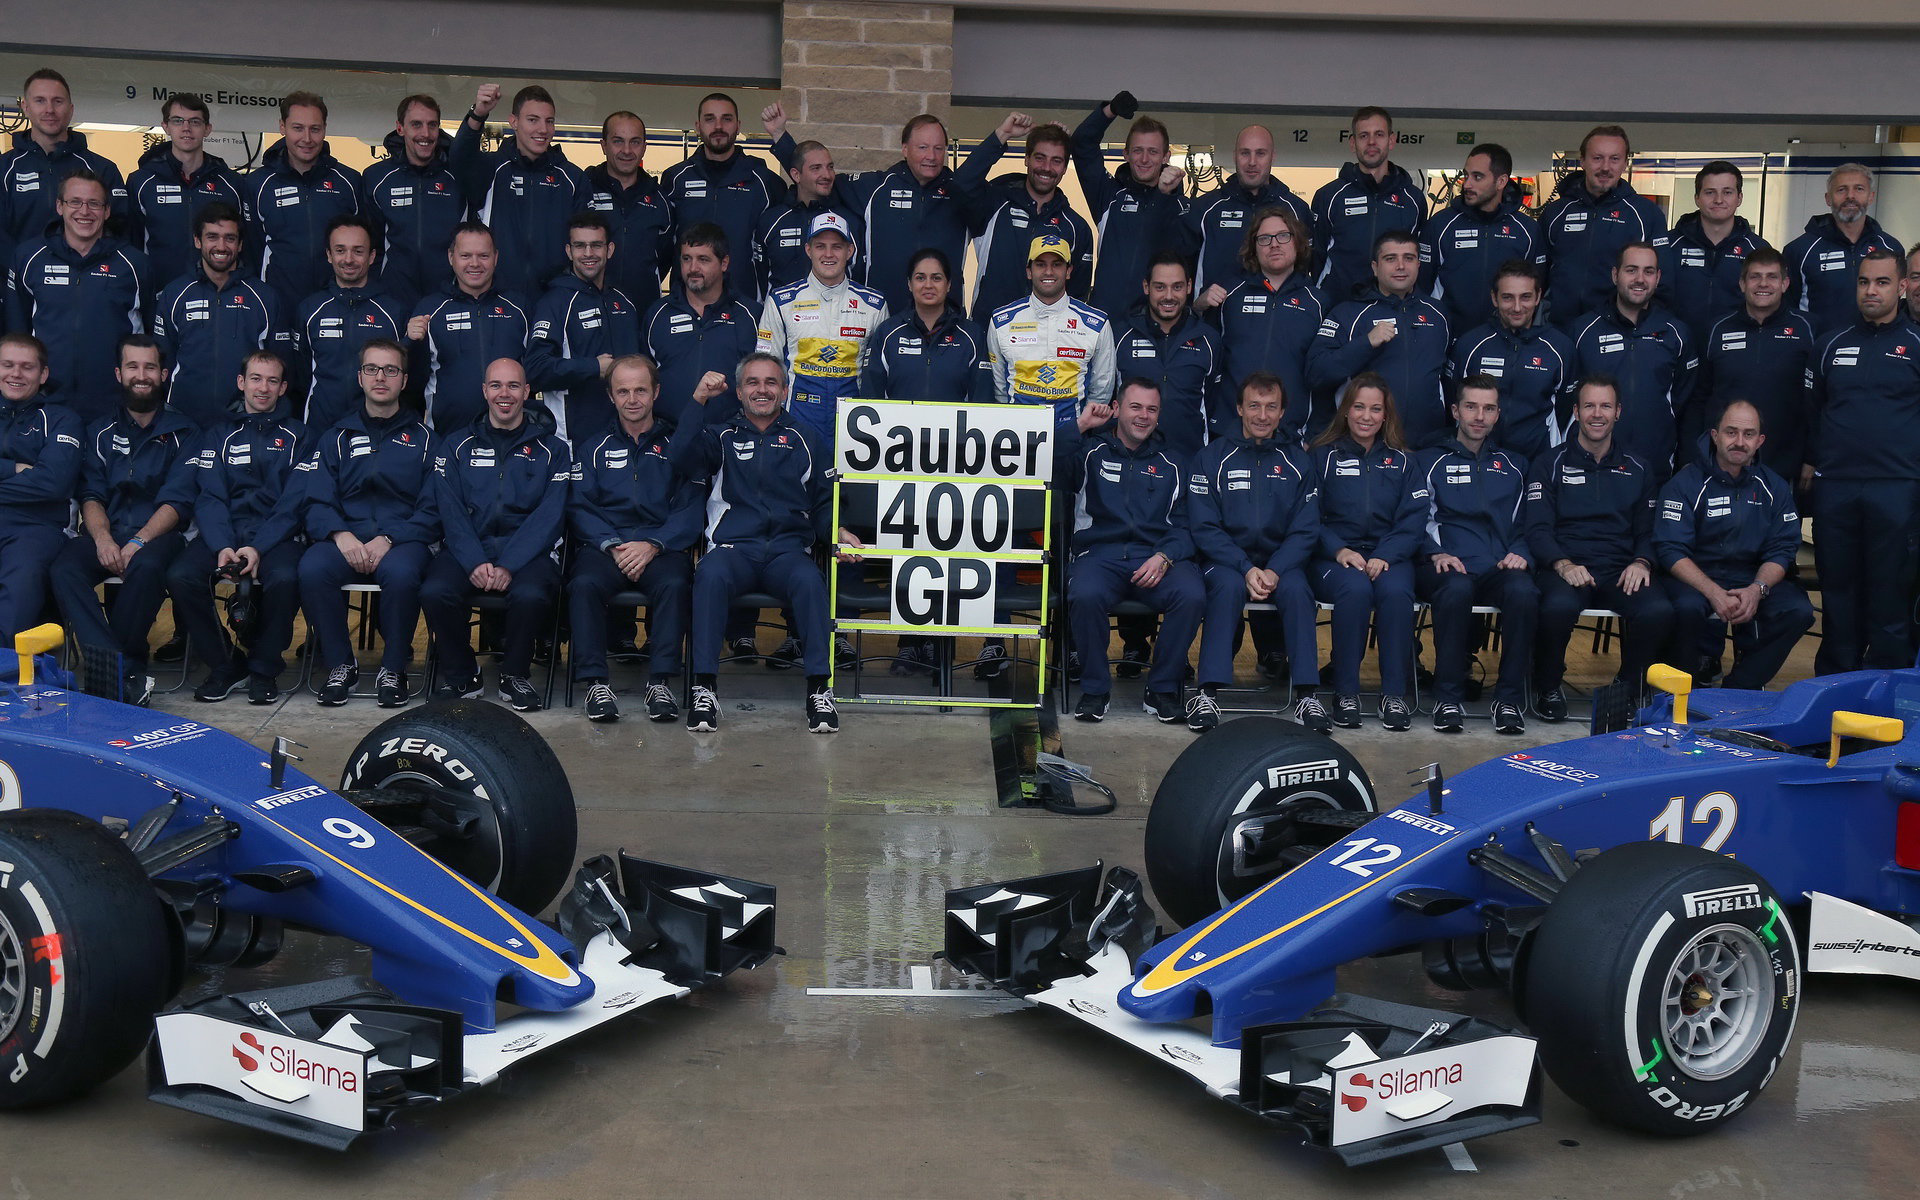 Hromadná fotografie týmu Sauber v Austinu